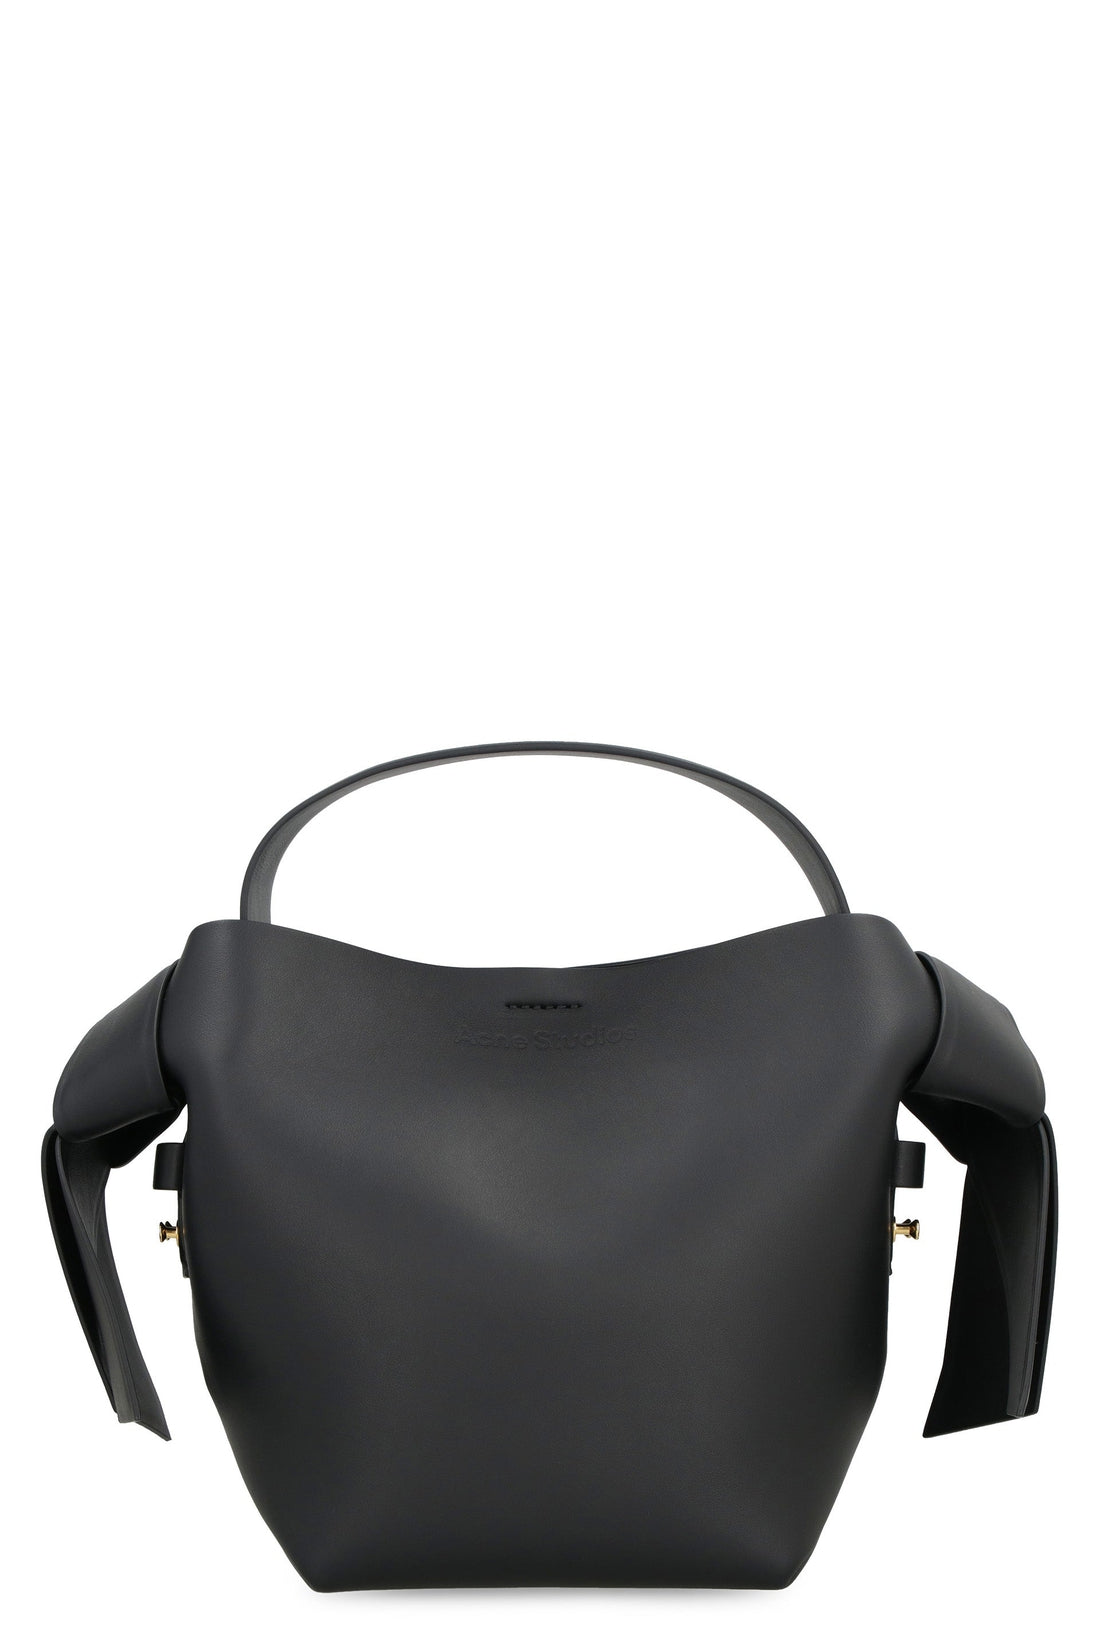 Acne Studios-OUTLET-SALE-Musubi mini leather shoulder bag-ARCHIVIST